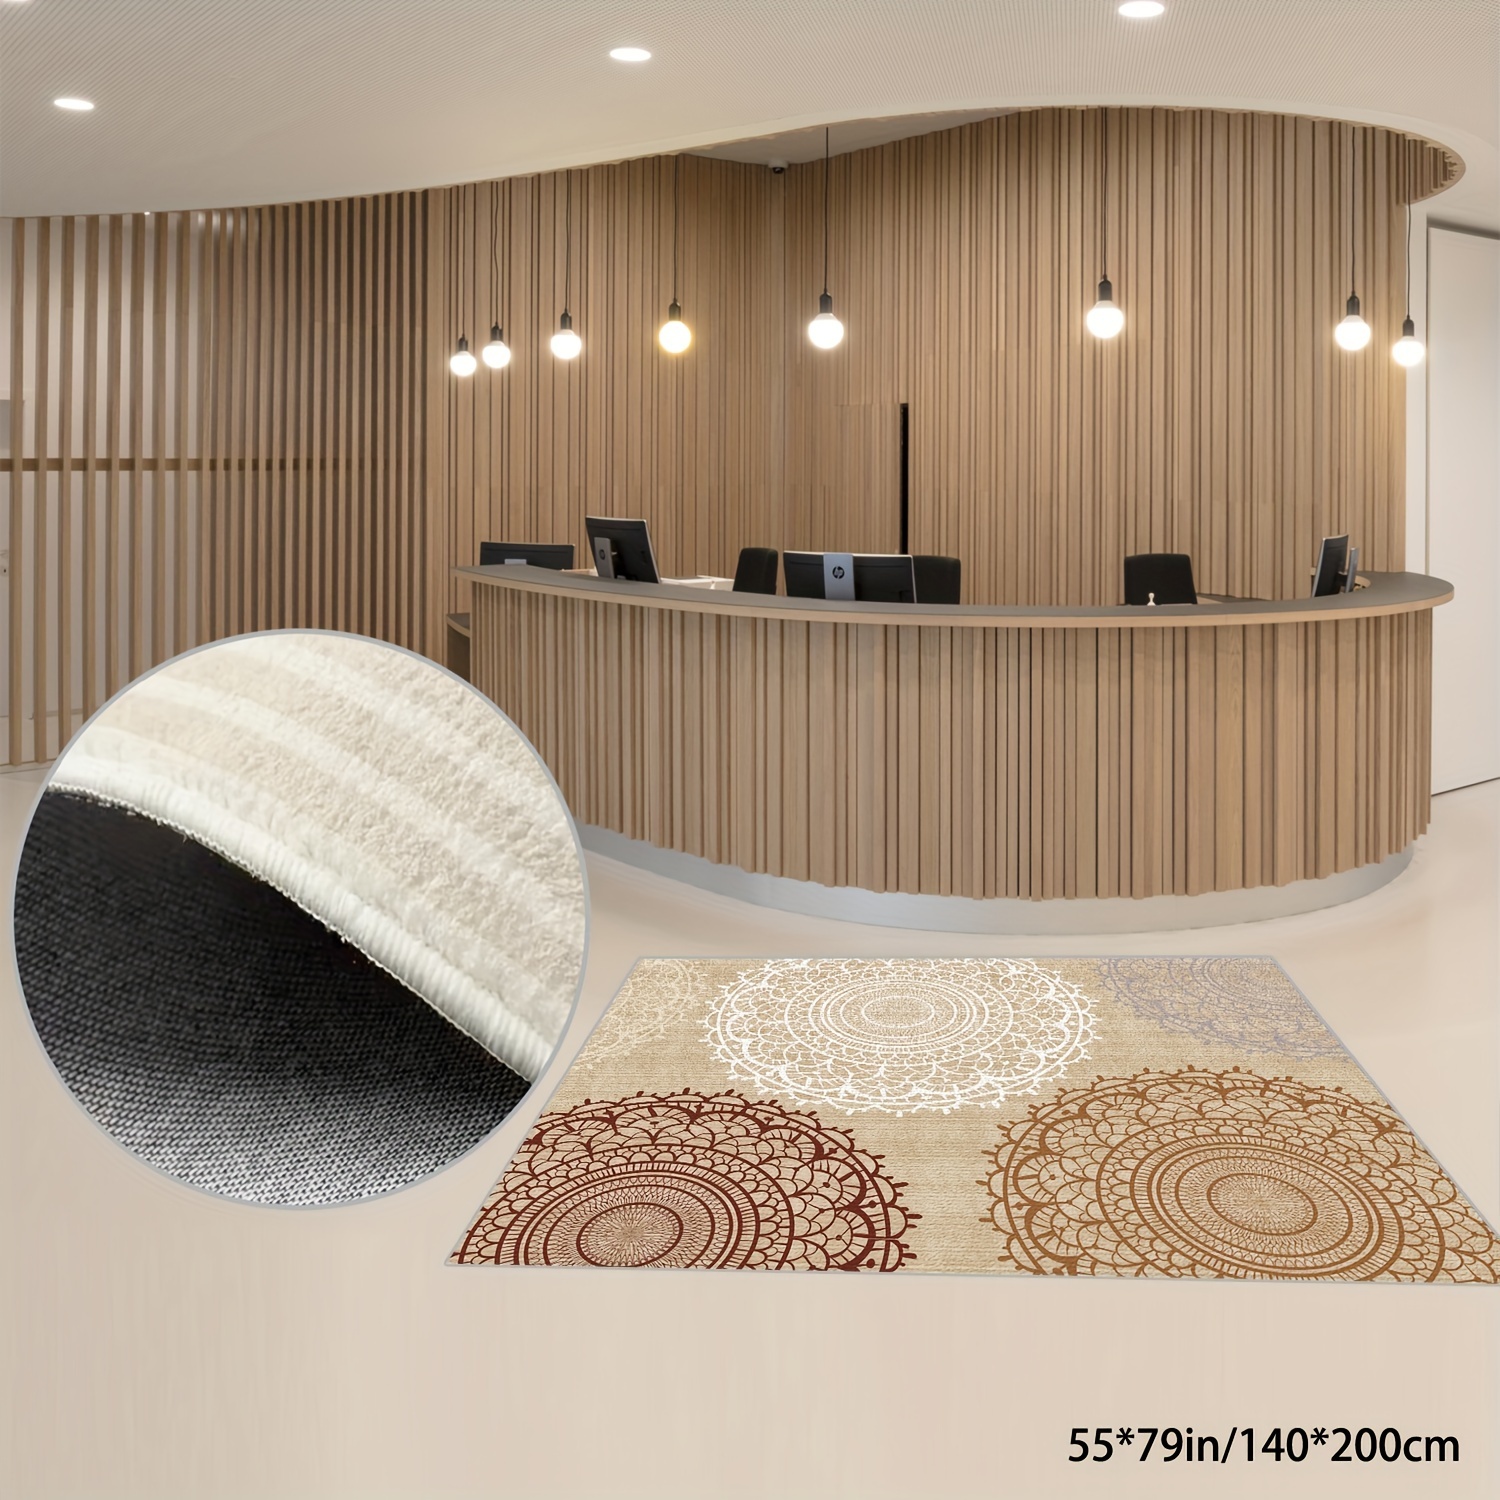 Oval Carpet For Living Room Big Size European Center Rug Modern Bedroom  Dining Room Hallway Floor